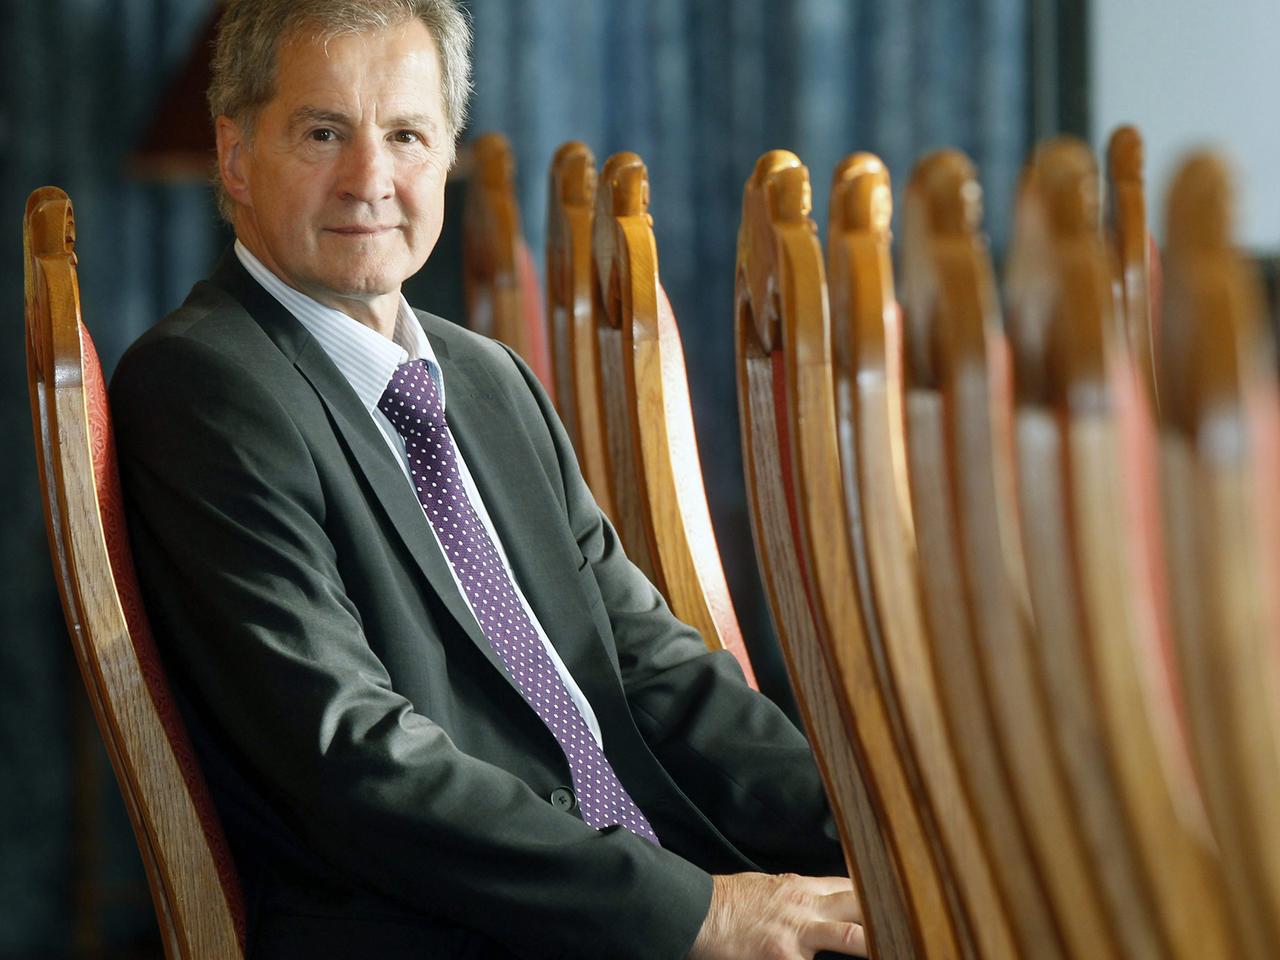 Jo Leinen sitzt in einer Stuhlreihe